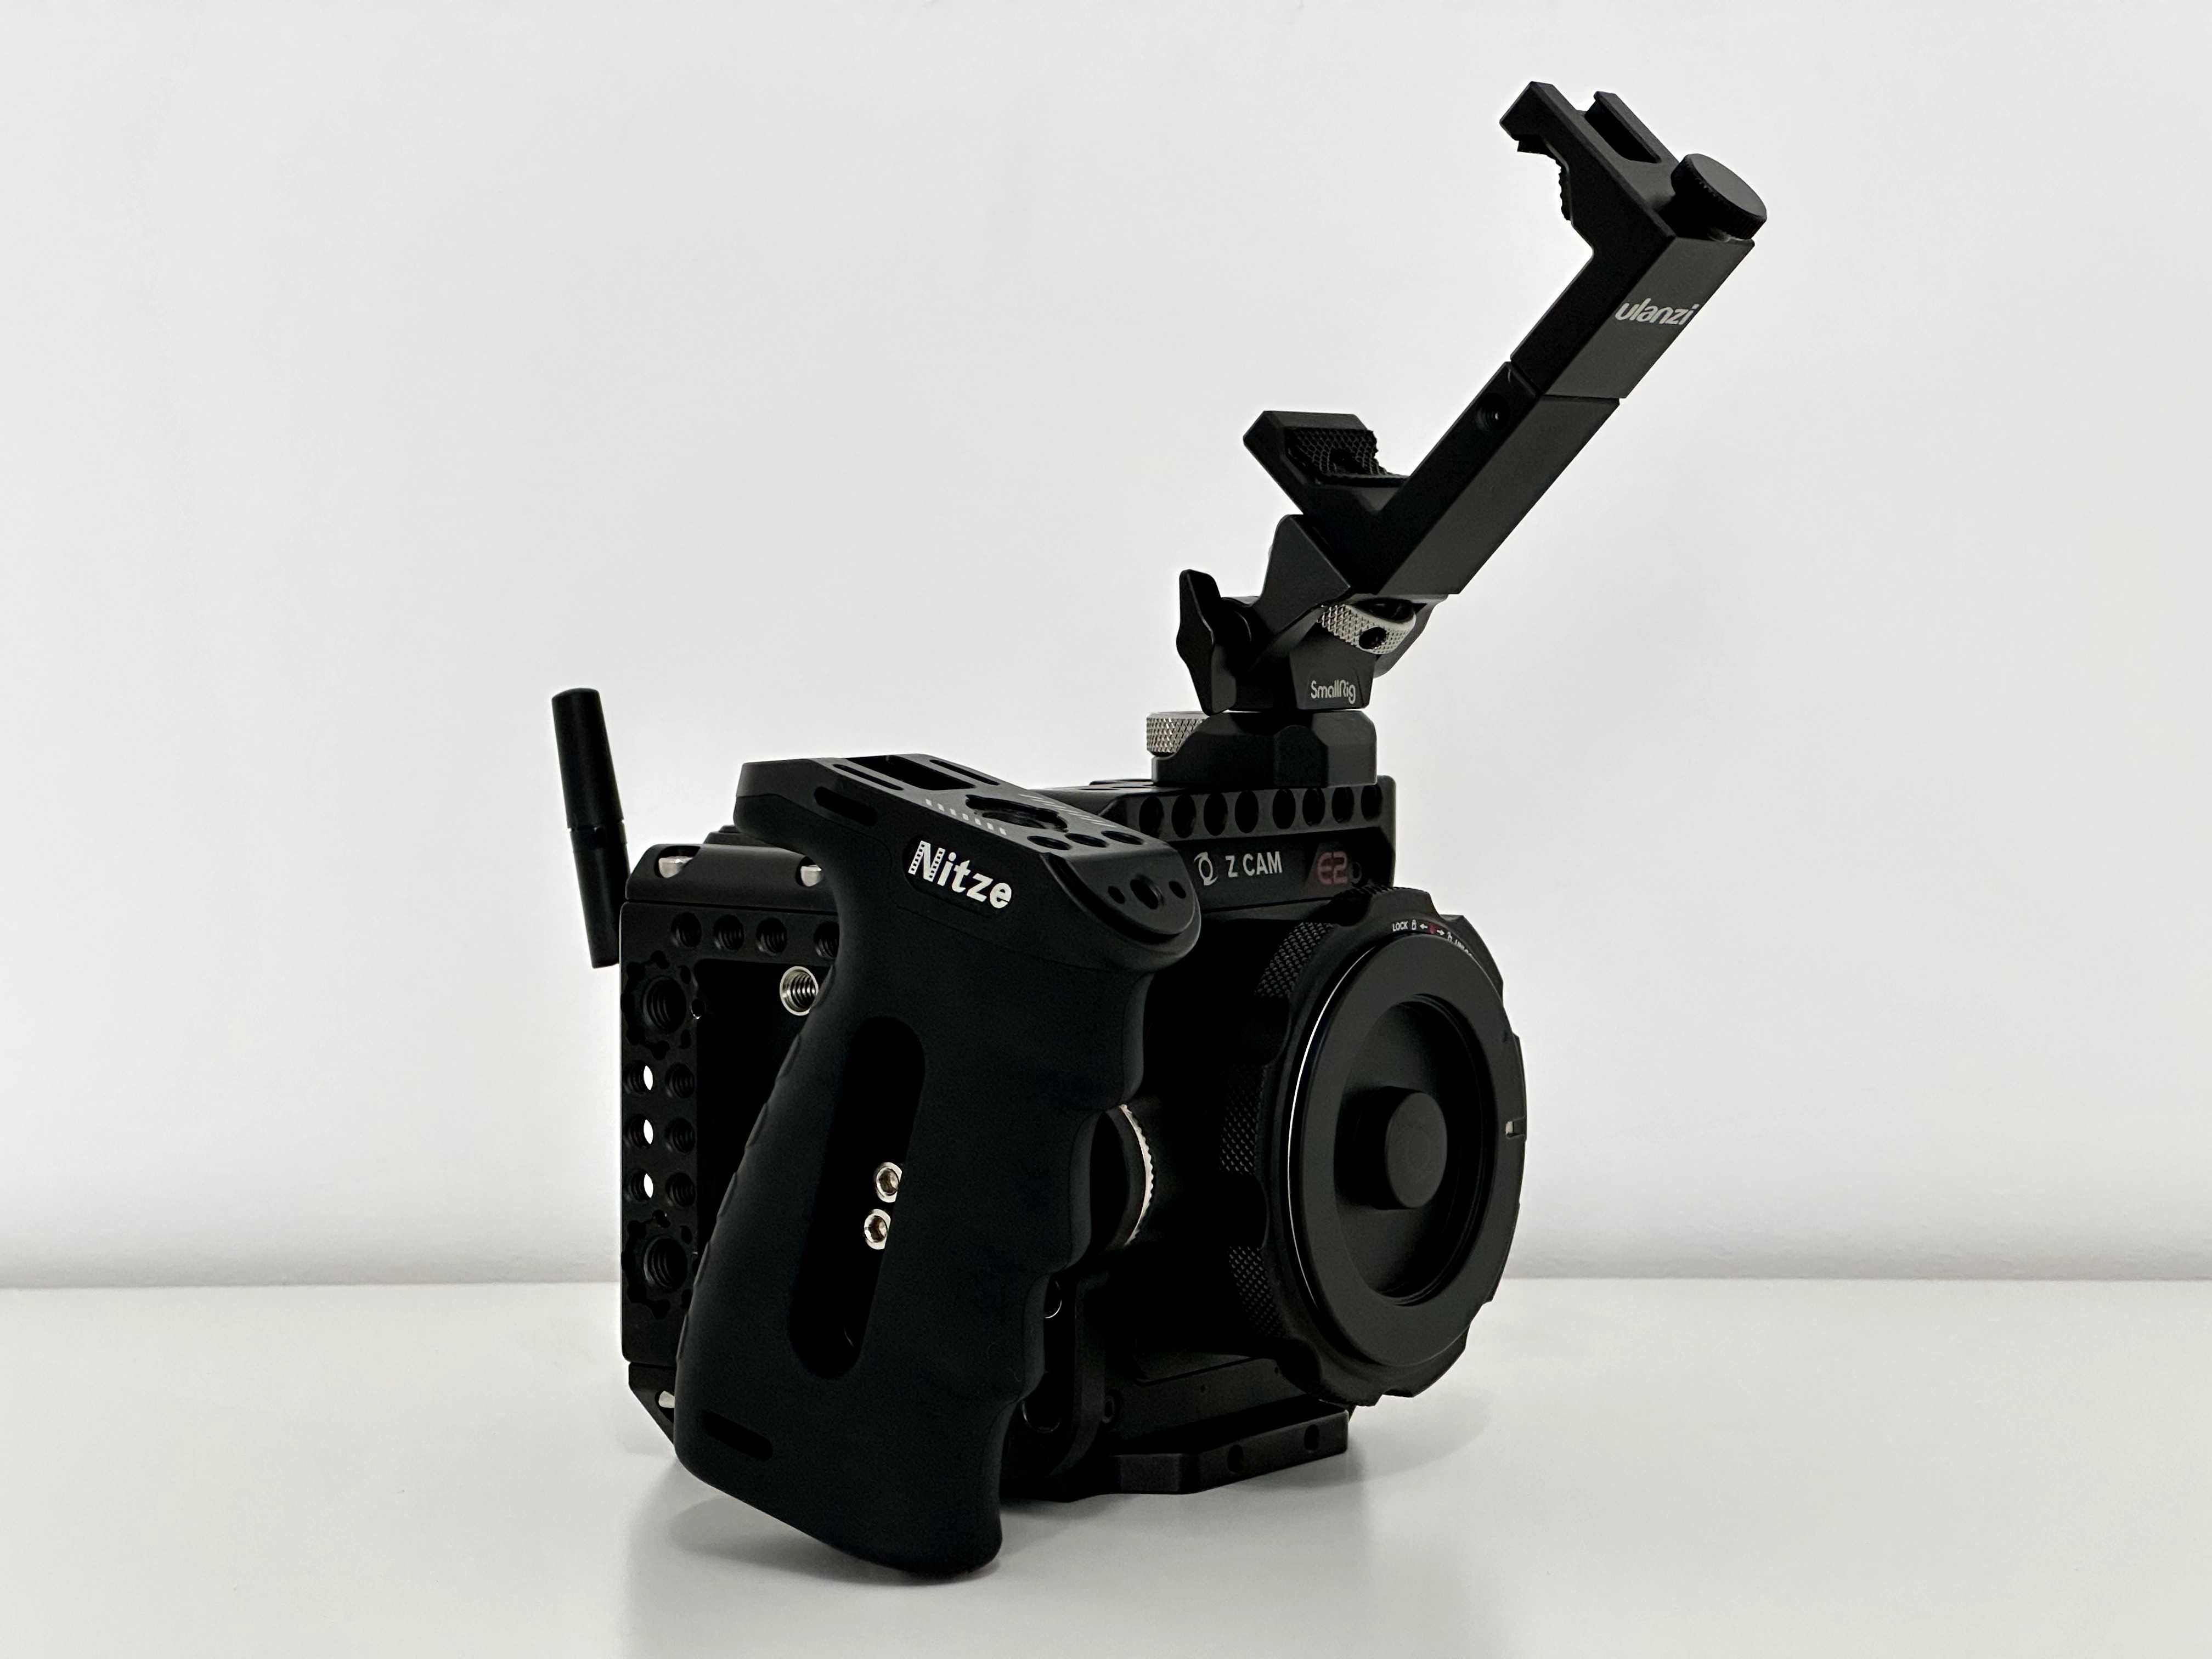 Z CAM E2-S6G S35 Kamera kinowa 6K z globalną migawką